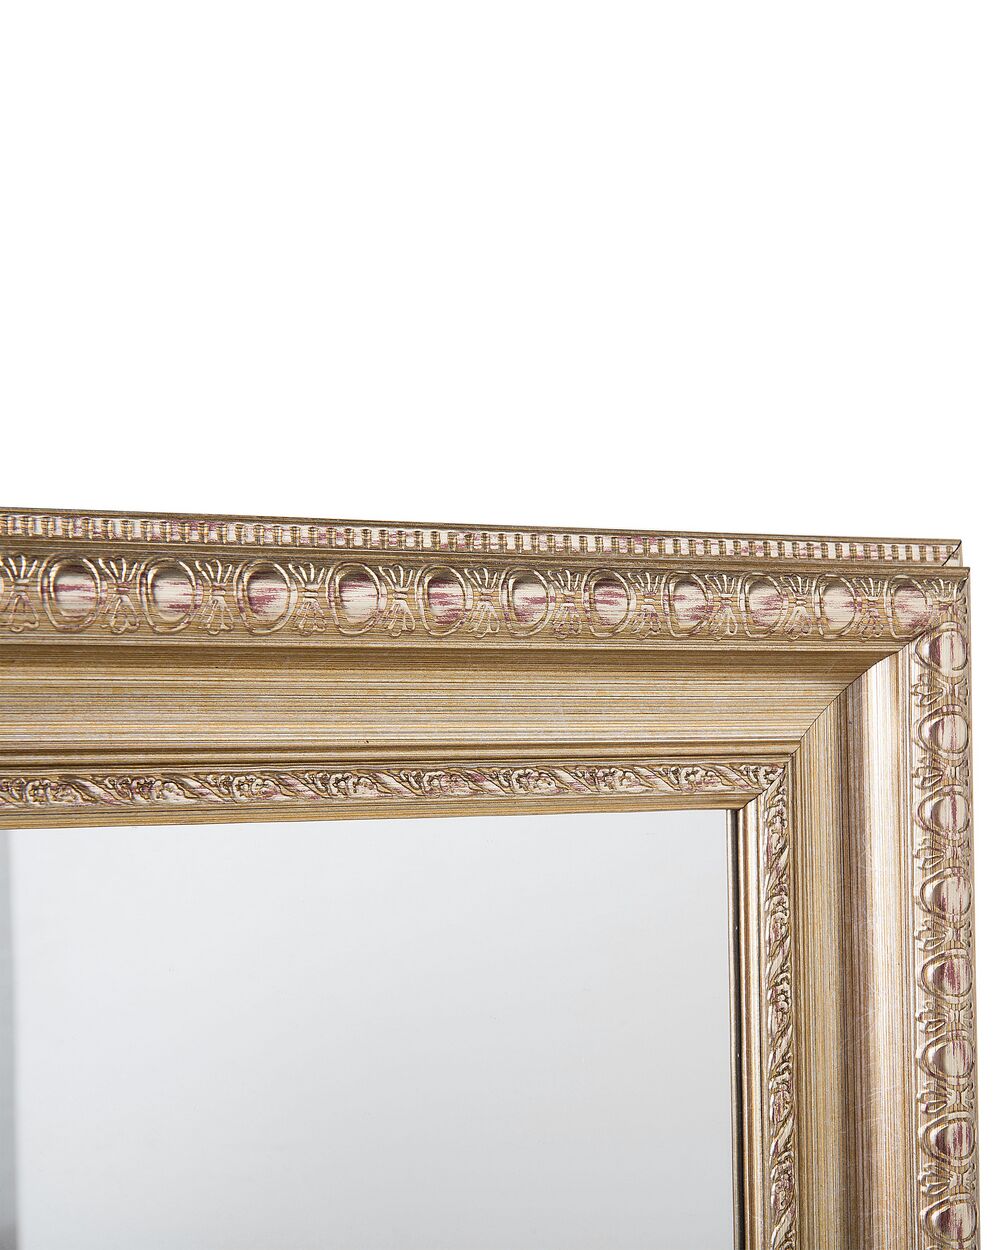 Specchio da parete con cornice rettangolare in legno.